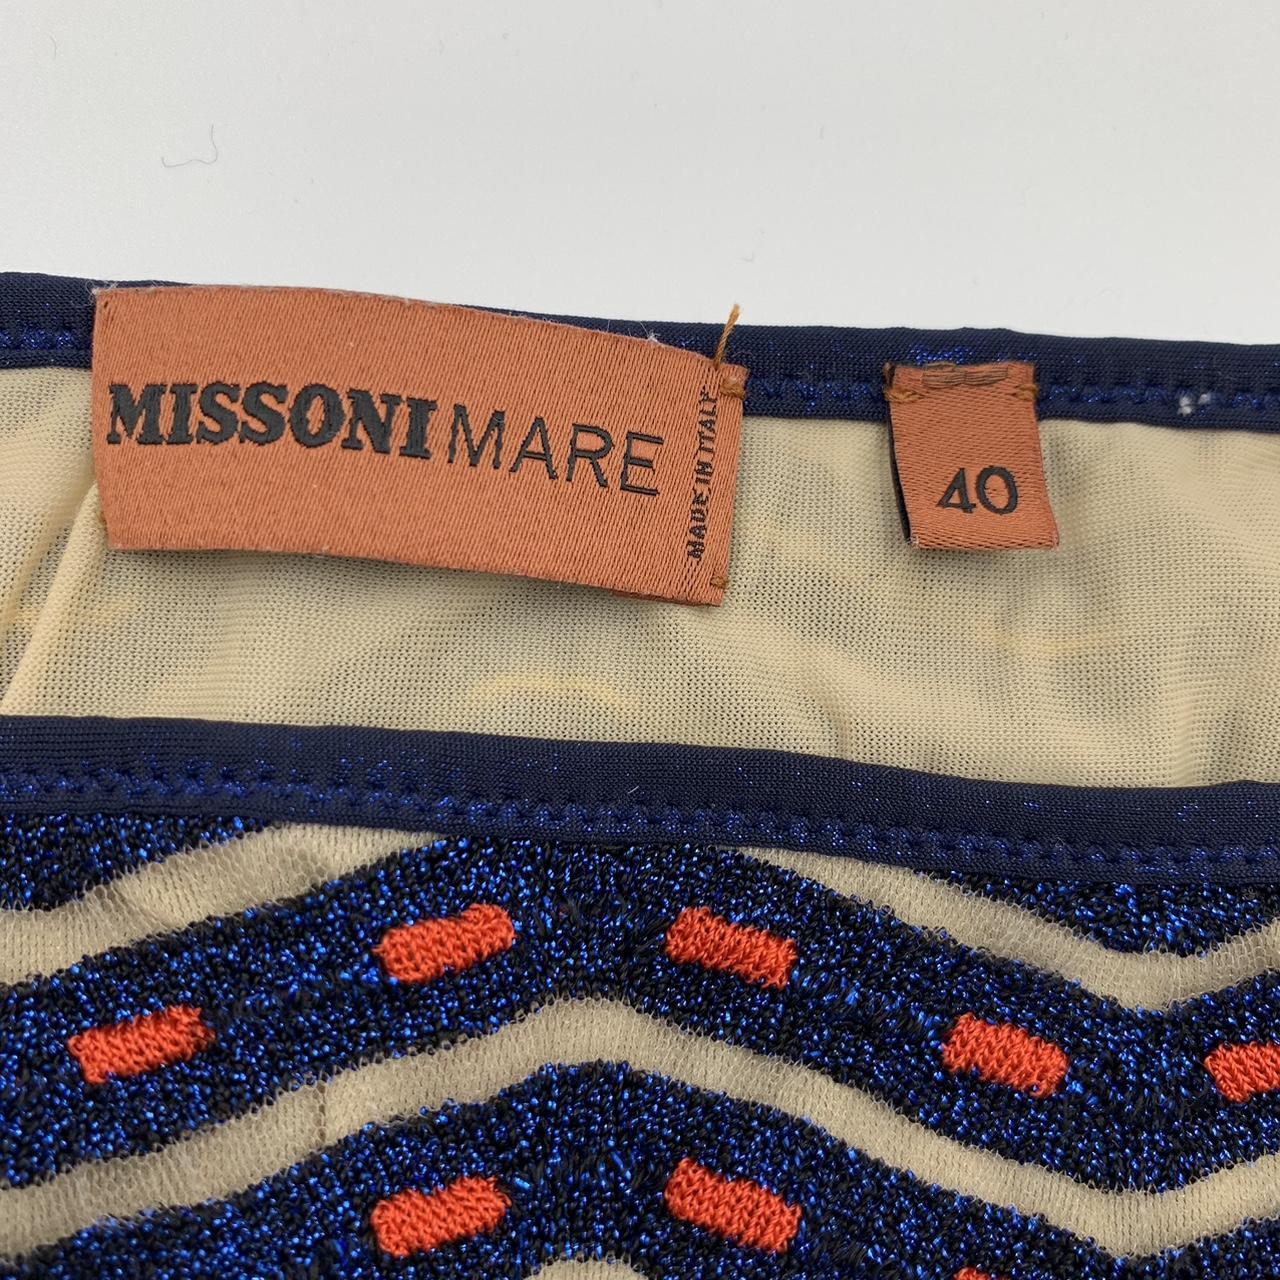 Missoni Mare bikini IT 40 UK 8 #missoni #missonimare - Depop